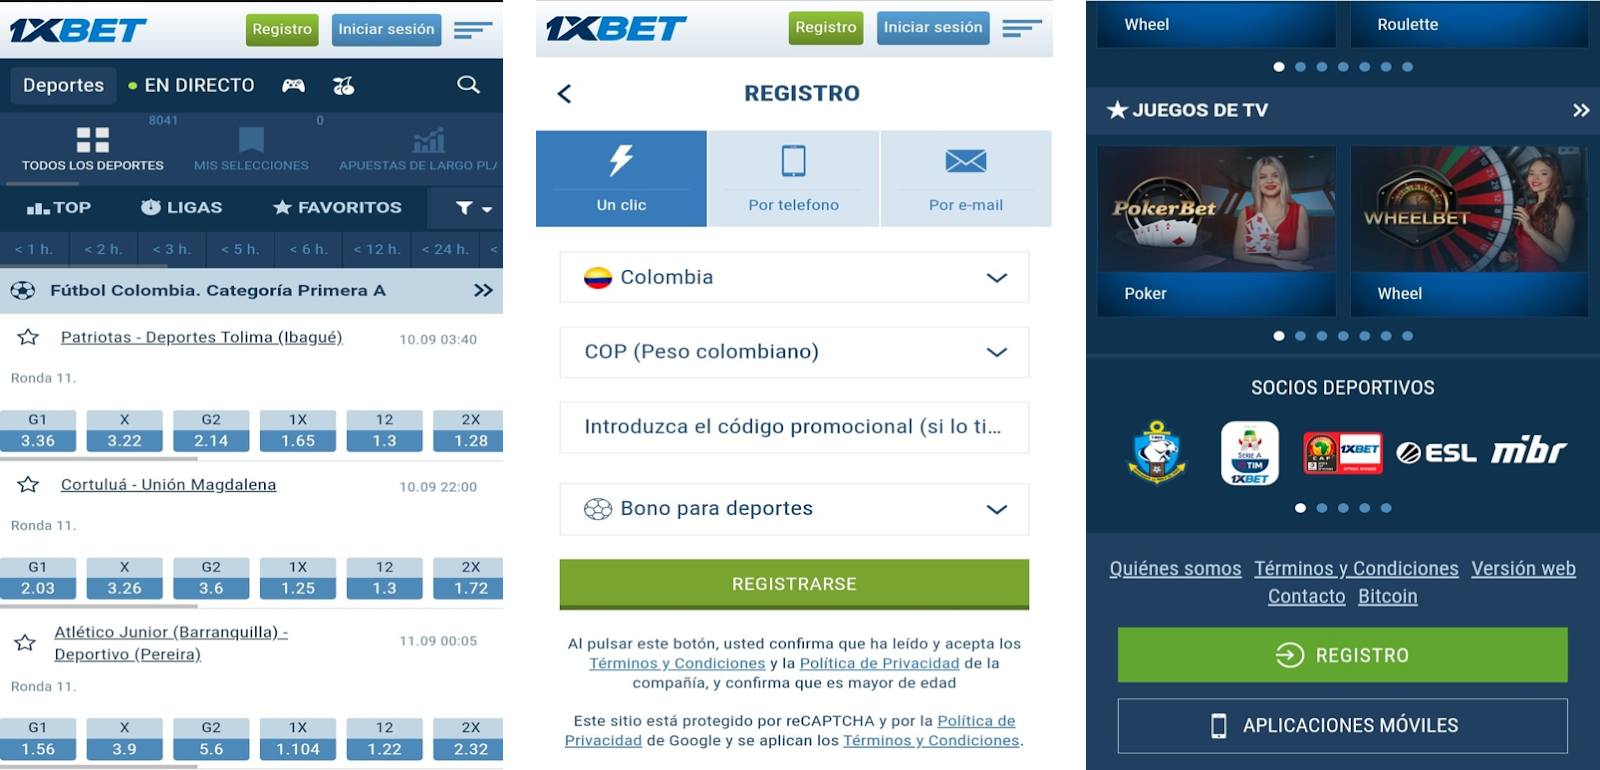 Interfax versión móvil 1xBet, partidos fútbol colombiano, menú de registro a un “solo toque”, juegos de tv disponibles